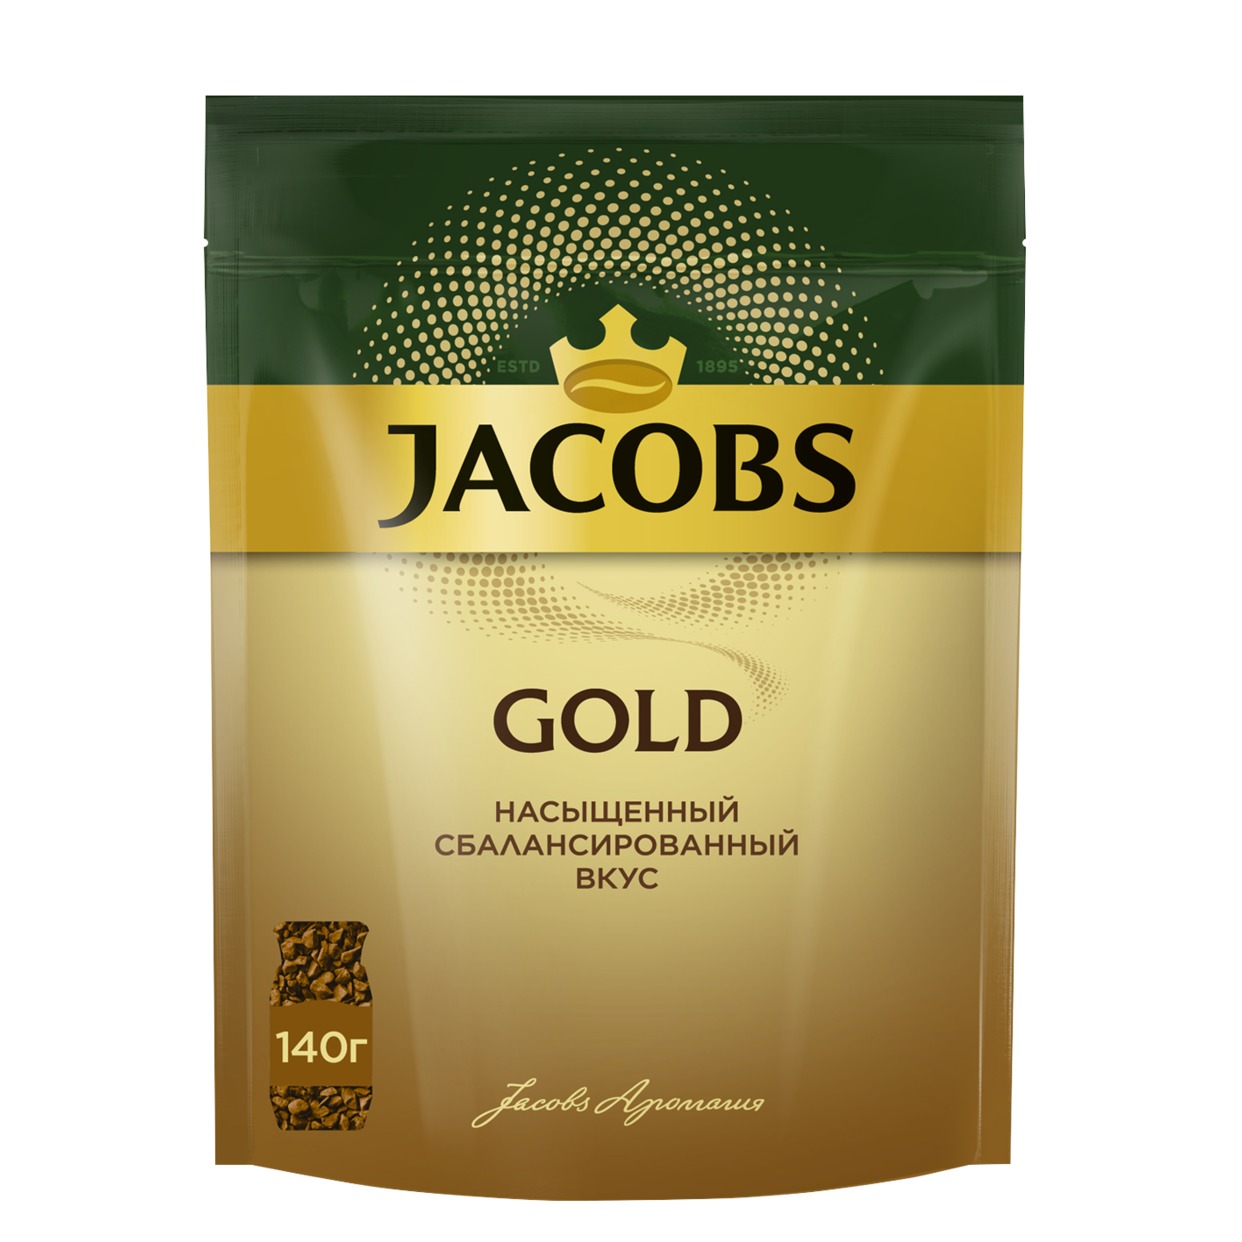 Кофе Jacobs Gold, расворимый, 140 г по акции в Пятерочке